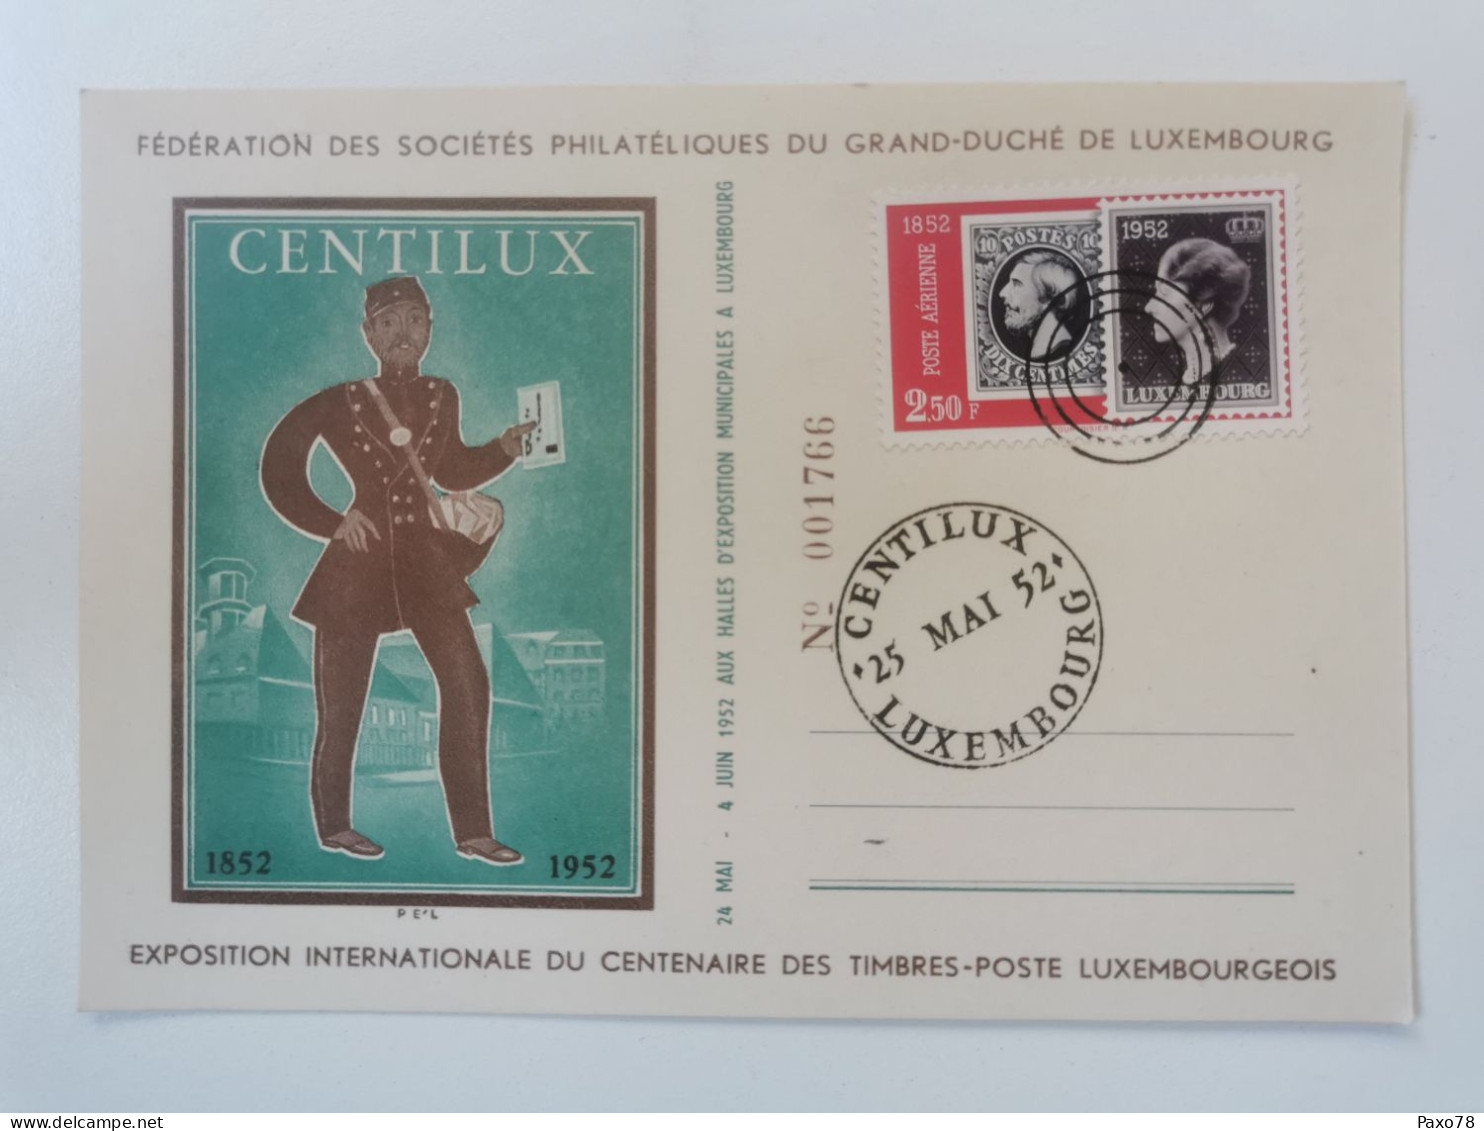 Centilux 1955 - Commemoration Cards